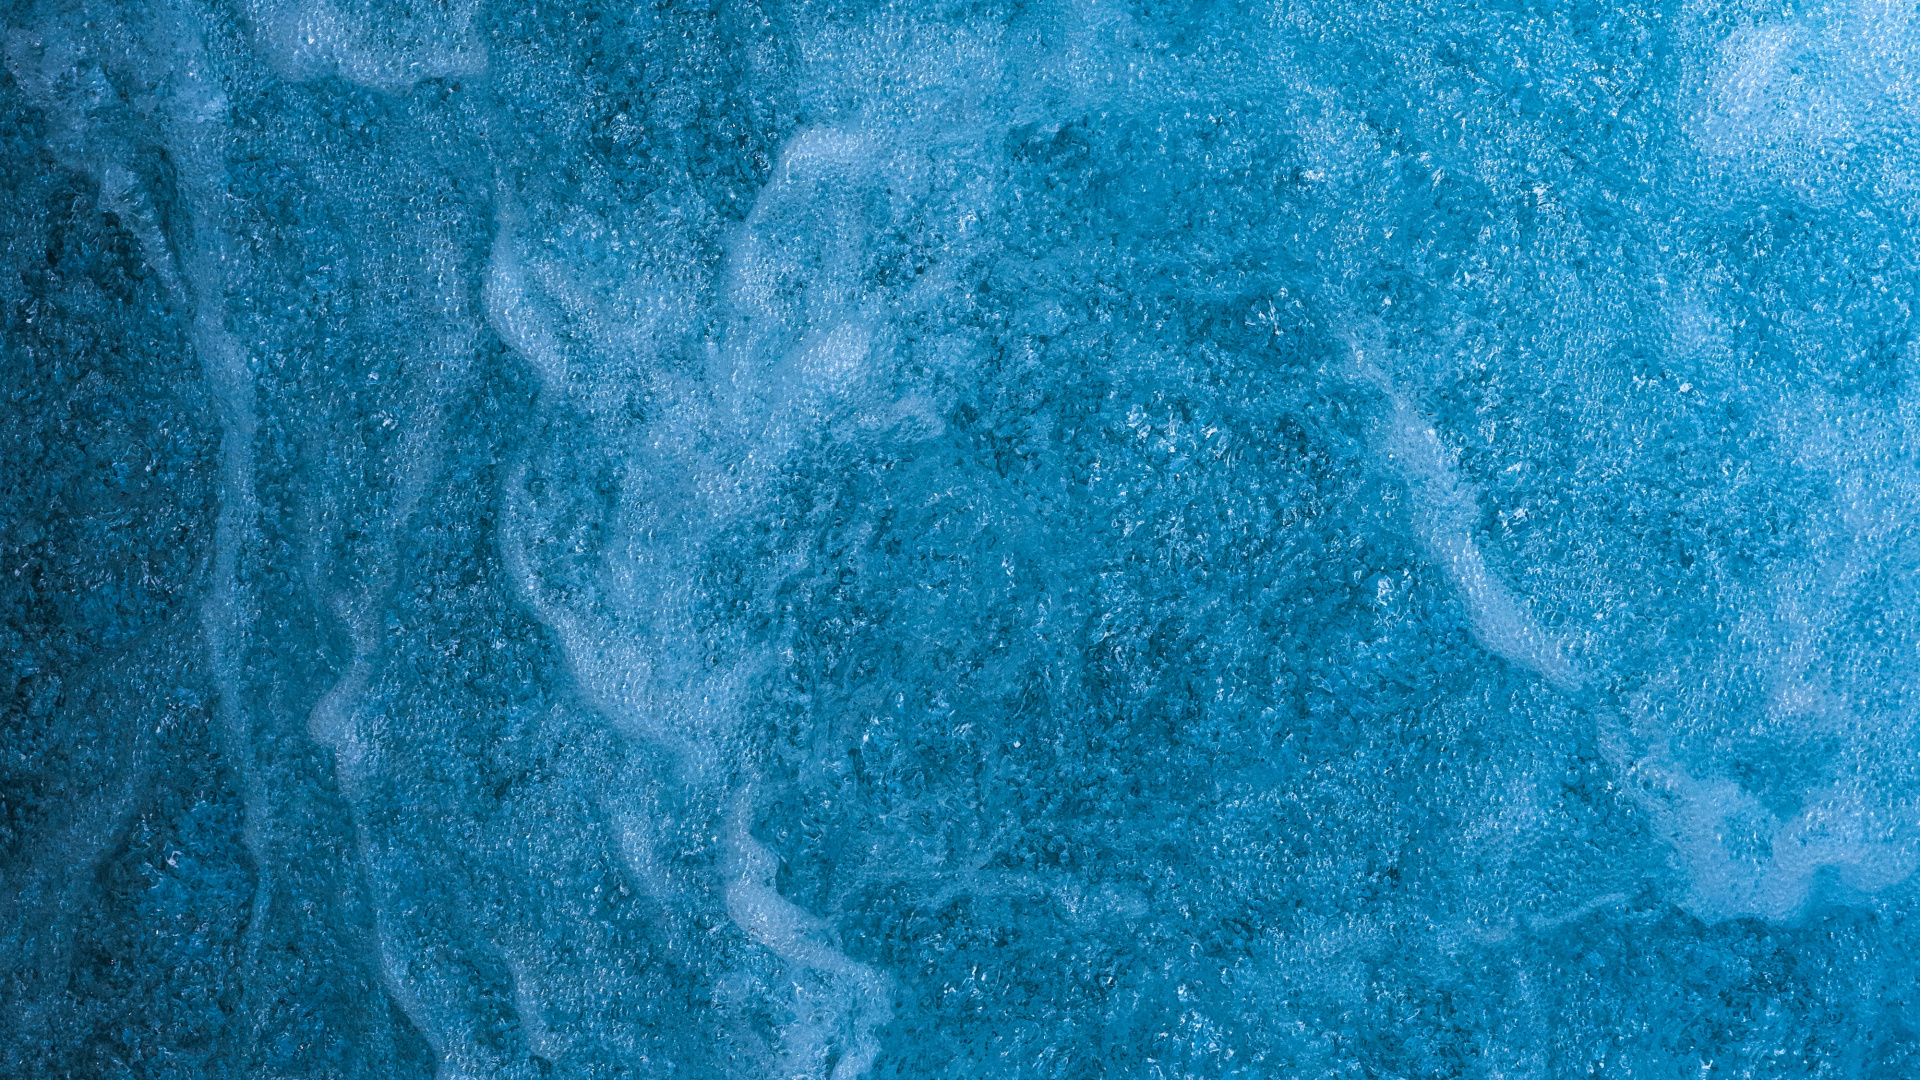 Textura, Agua, Azul, Aqua, Turquesa. Wallpaper in 1920x1080 Resolution